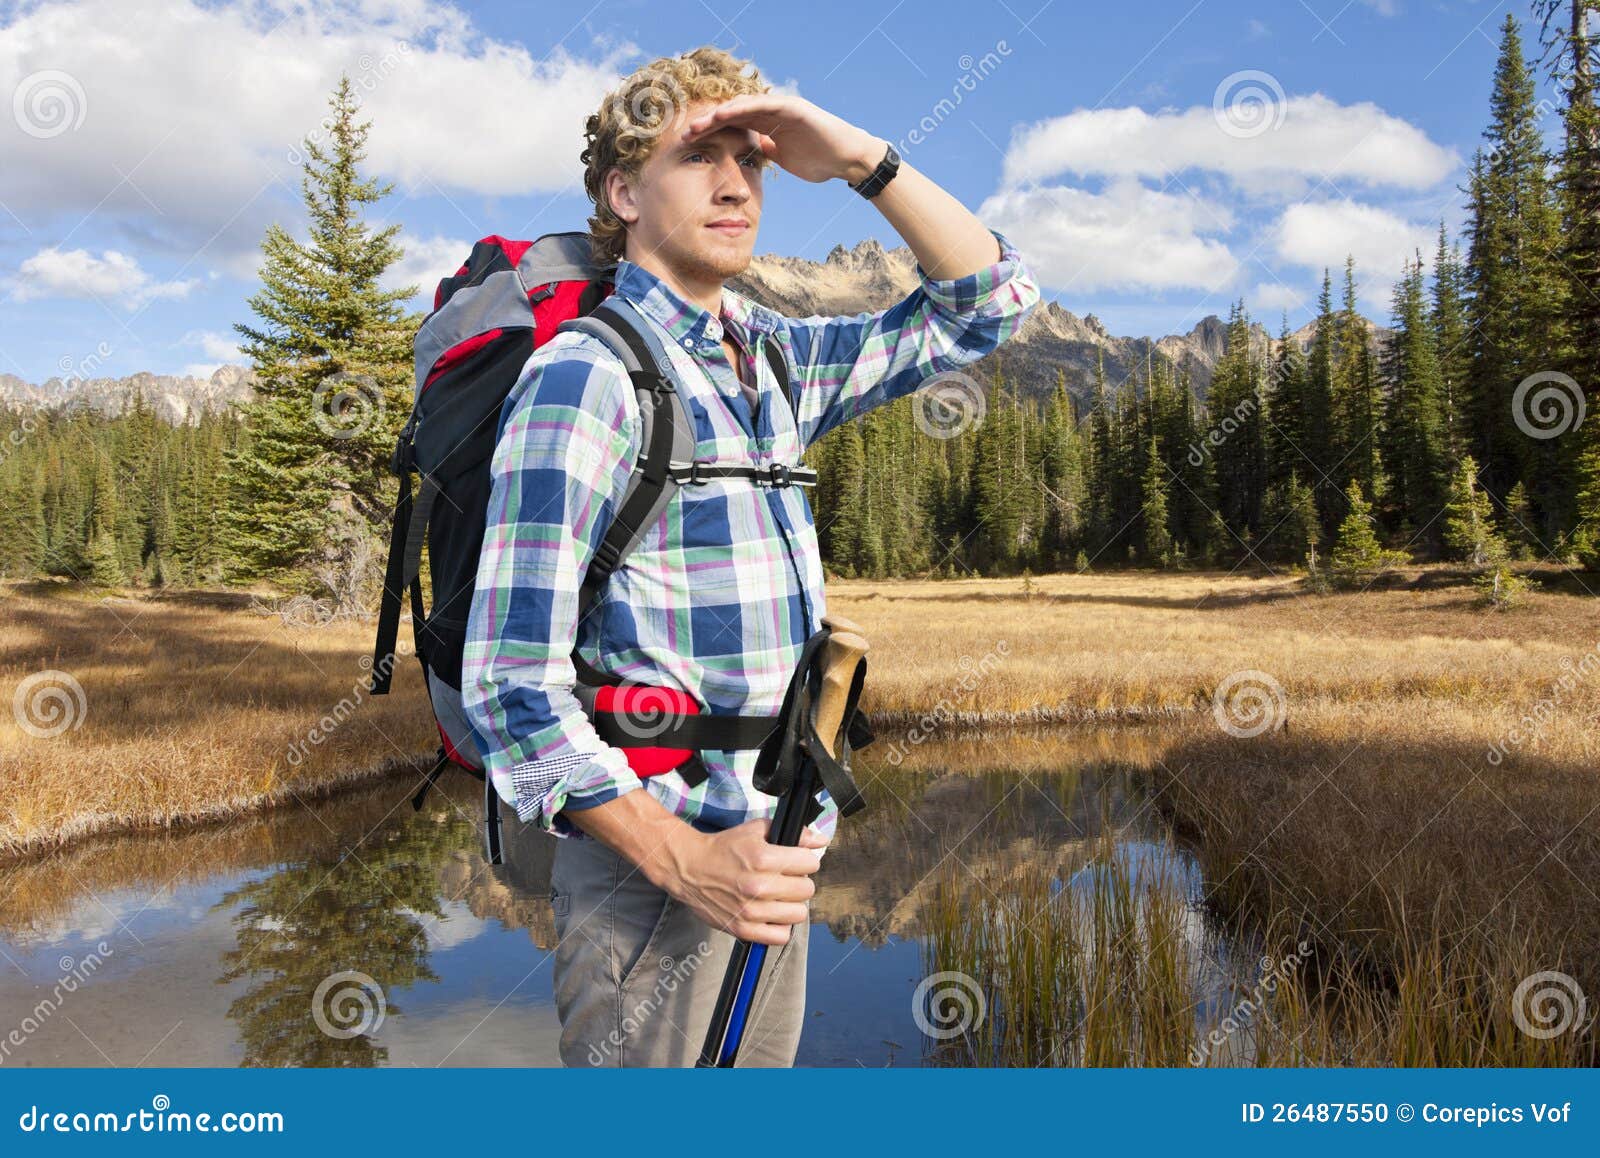 Forscher. Junger Mann mit Spazierstöcken und einem Rucksack bewundert die schöne Landschaft in der Abendleuchte